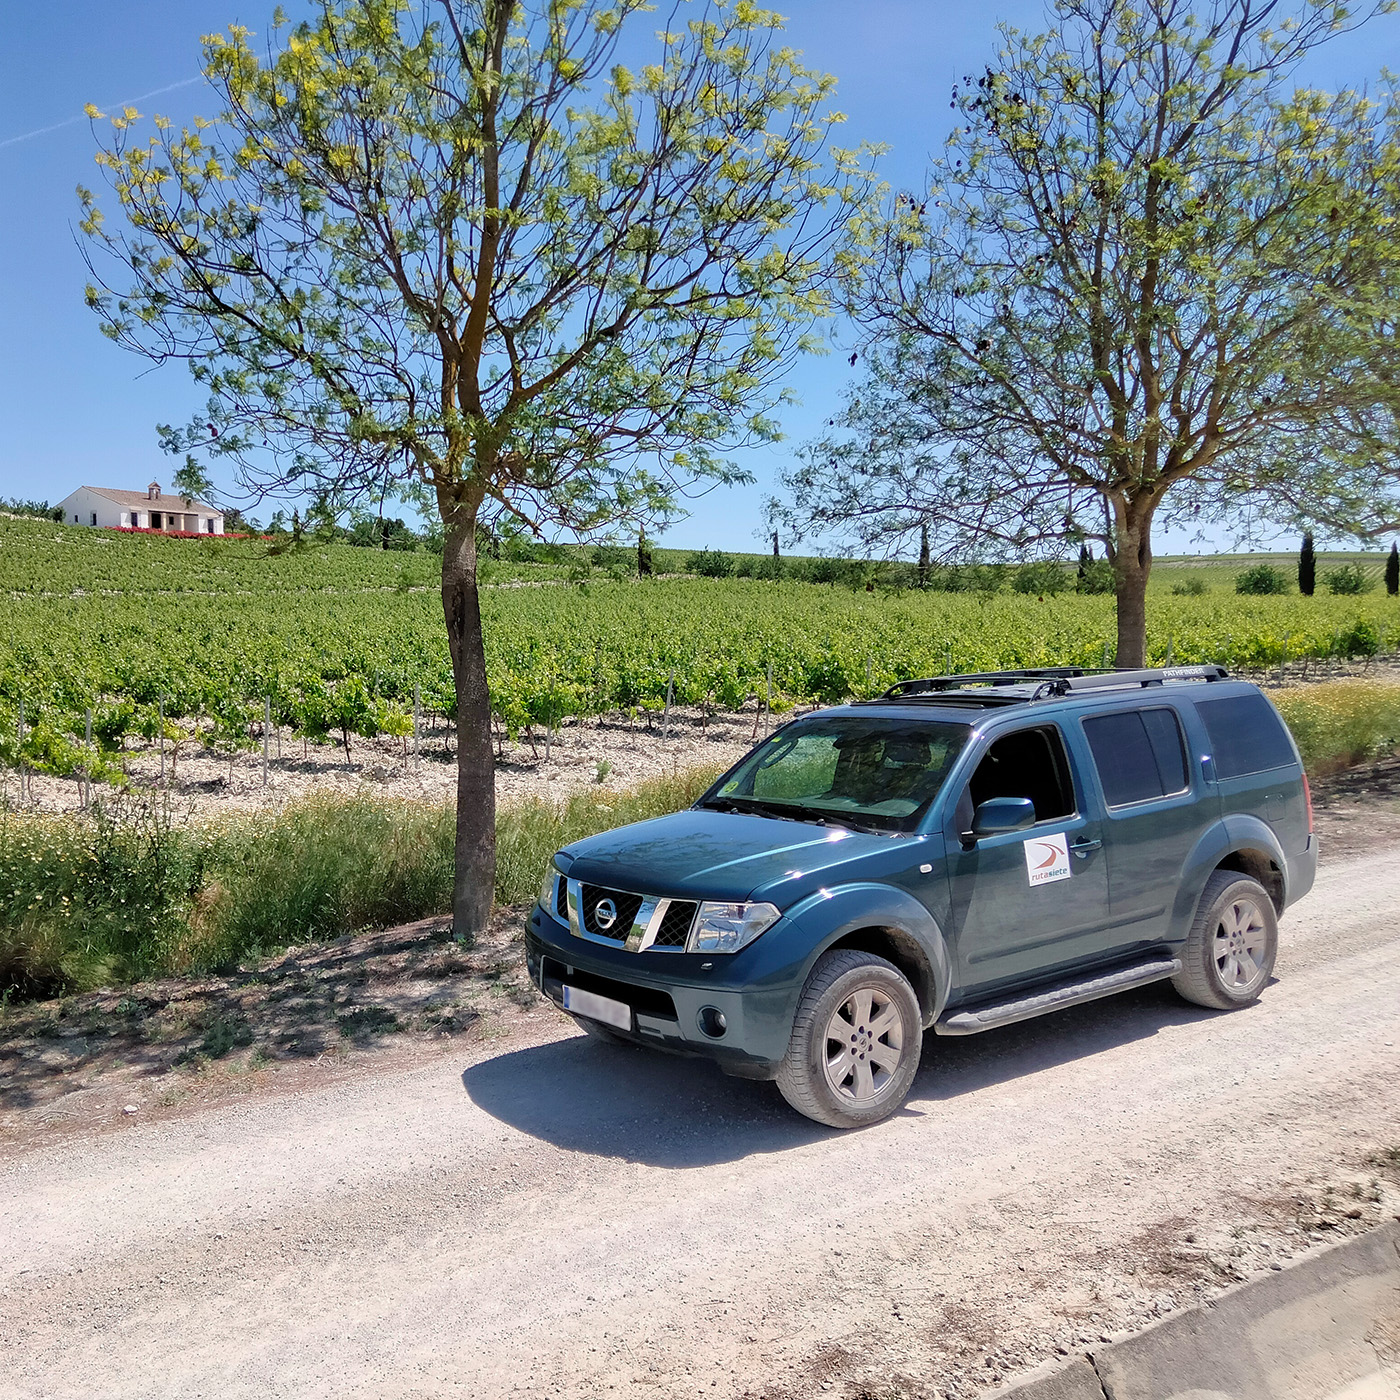 4x4 route through the vineyards of the Jerez area 6 - Rutasiete